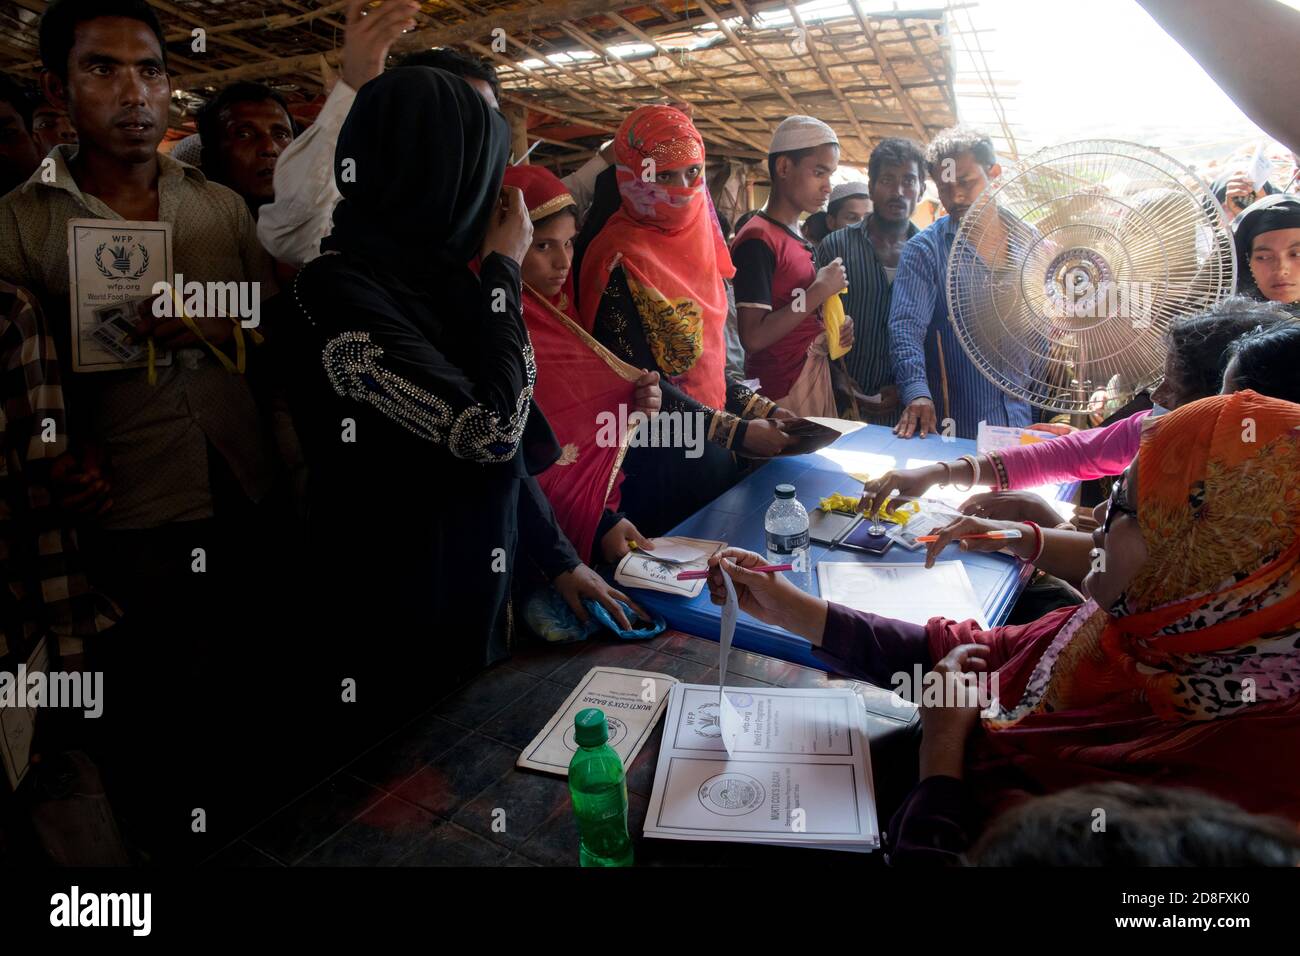 Des réfugiés Rohingya récemment arrivés attendent une aide alimentaire au camp de Kutupalong le 16 avril 2018 à Cox's Bazar, au Bangladesh. Plus de 650,000 Rohingya ont traversé la frontière avec le Bangladesh depuis août de l'année dernière, fuyant la violence. Banque D'Images